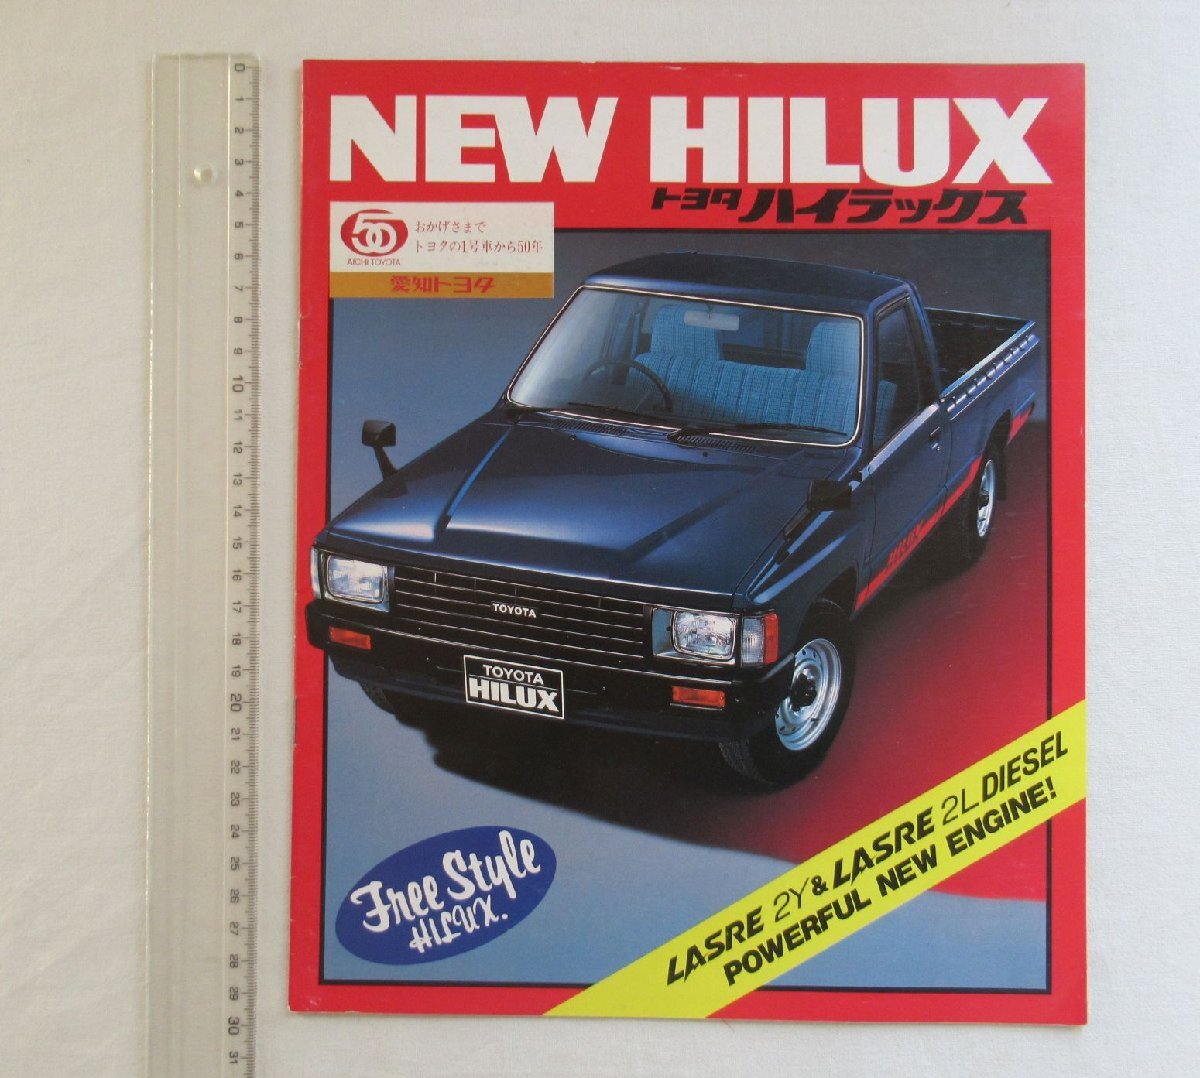 *[A60219* Hilux каталог ] TOYOTA NEW HILUX. модель : N30.40.50 серия.Y двигатель появление.*